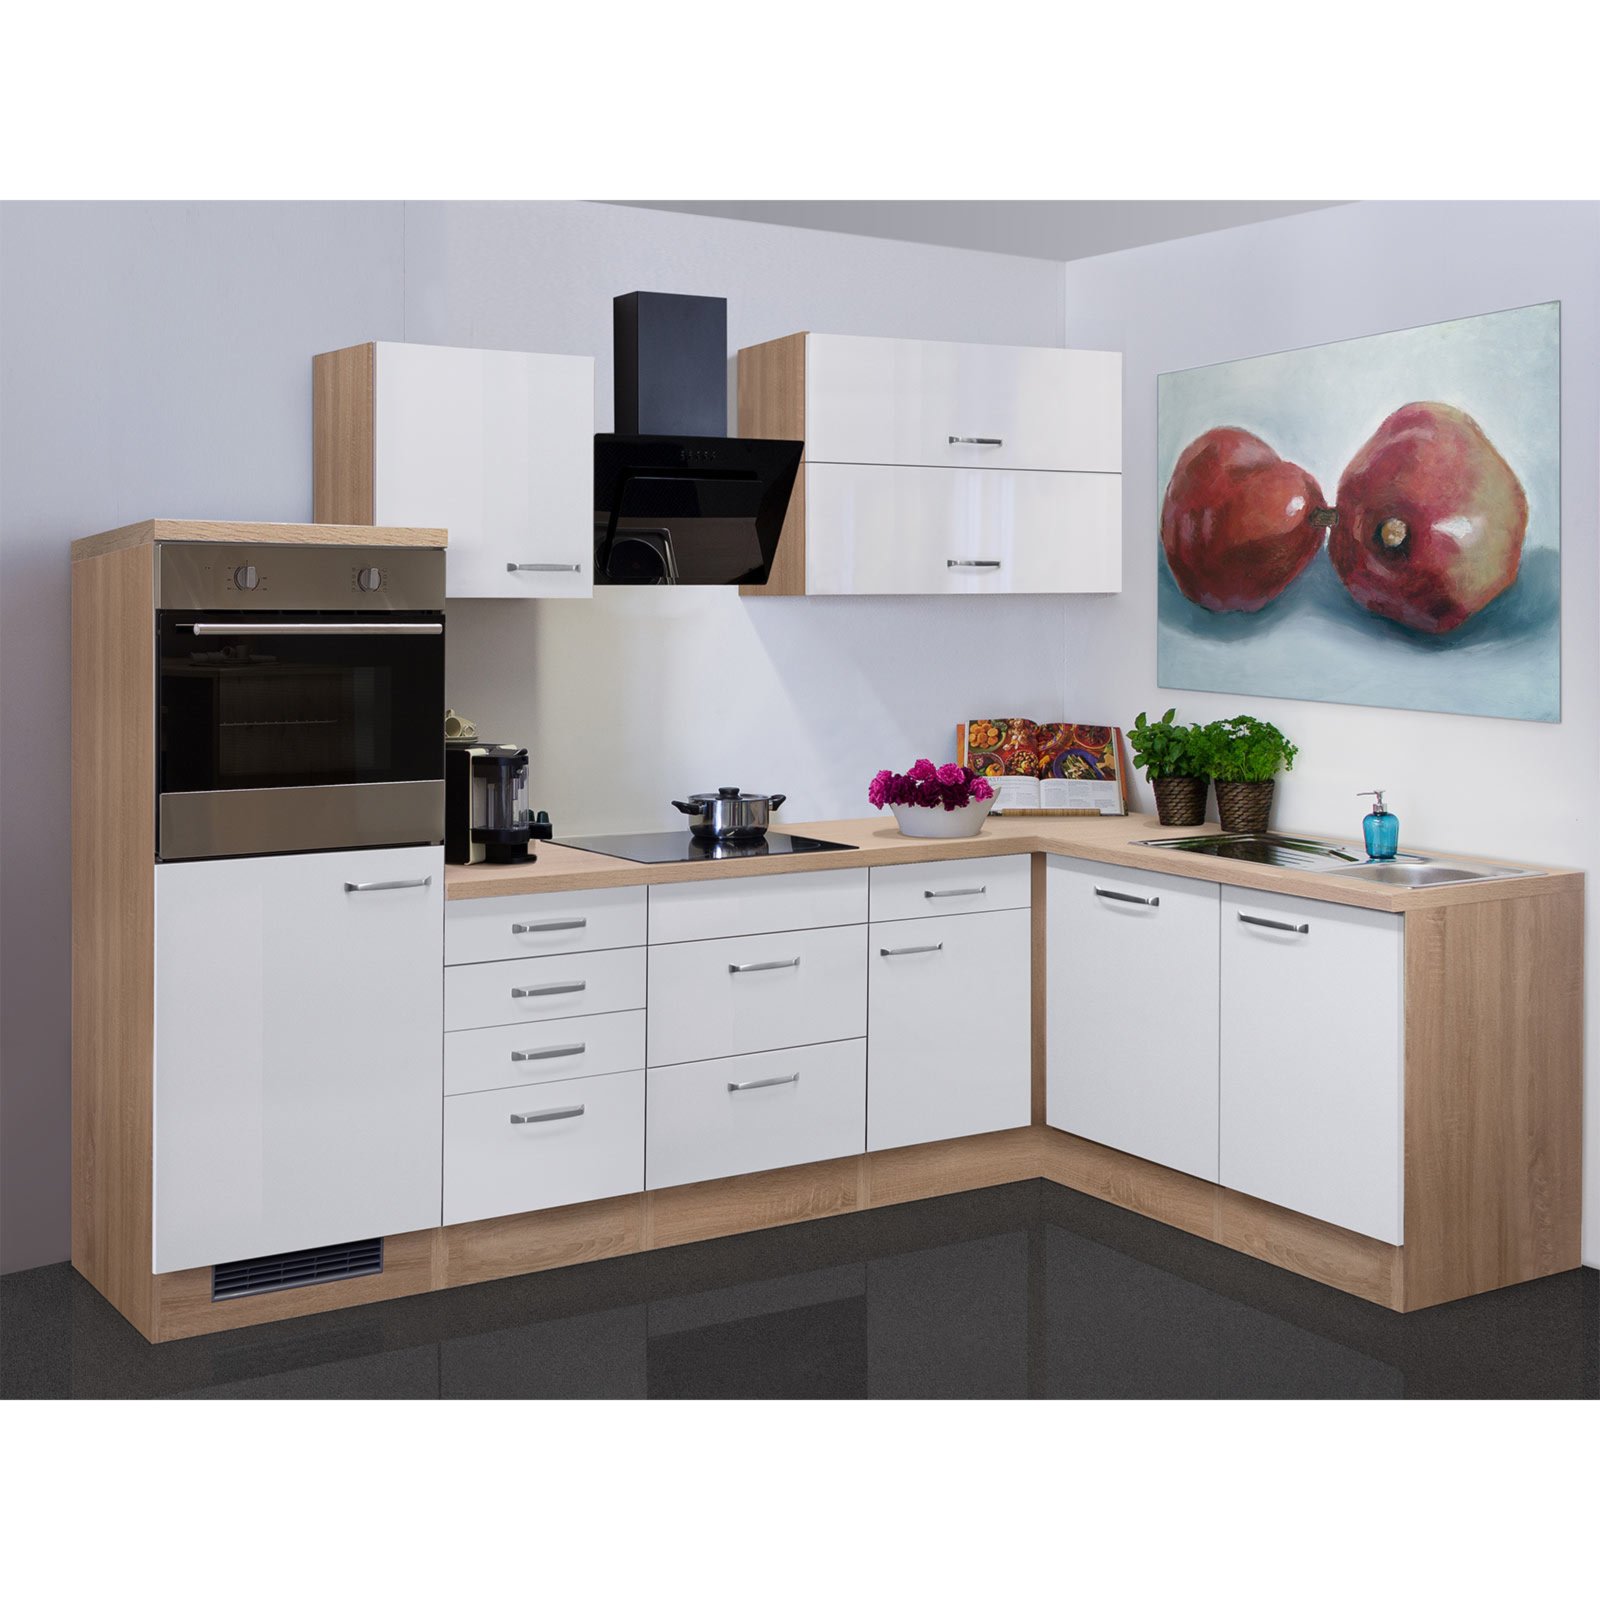 Winkelküche VALERO - bei Eiche mit Hochglanz-Sonoma ROLLER E-Geräten - kaufen | Online weiß - cm 280x170